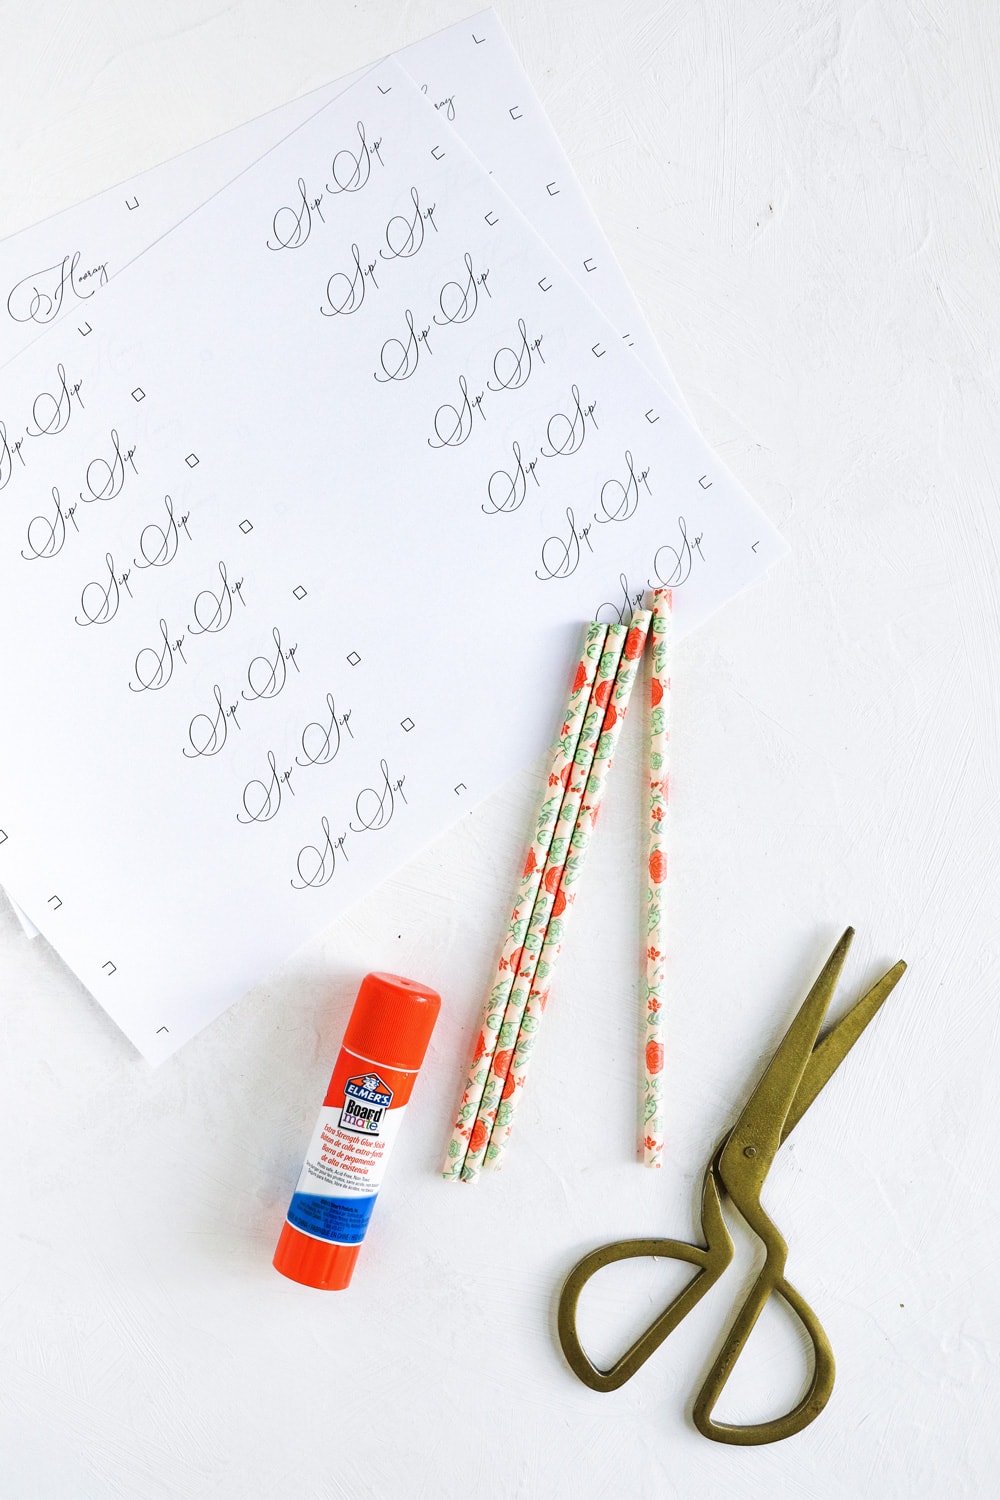 Glue Sticks - Cute Handwritten Font